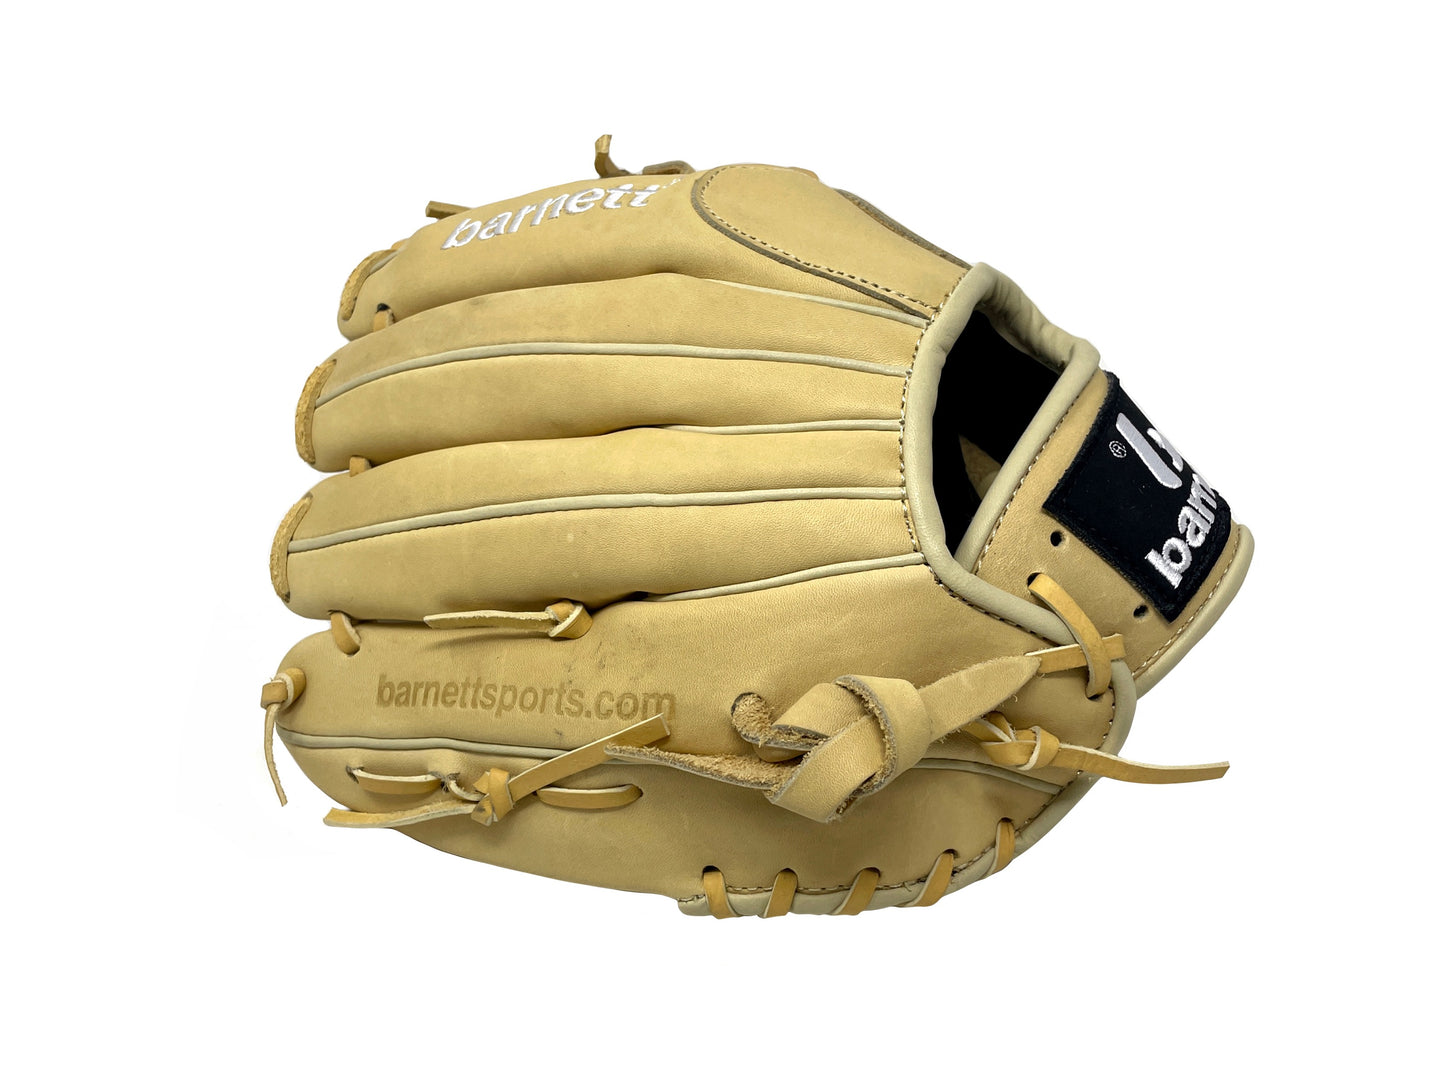 FL-115 Baseballhandske, högkvalitativ, läder, infield / outfield 11, Beige